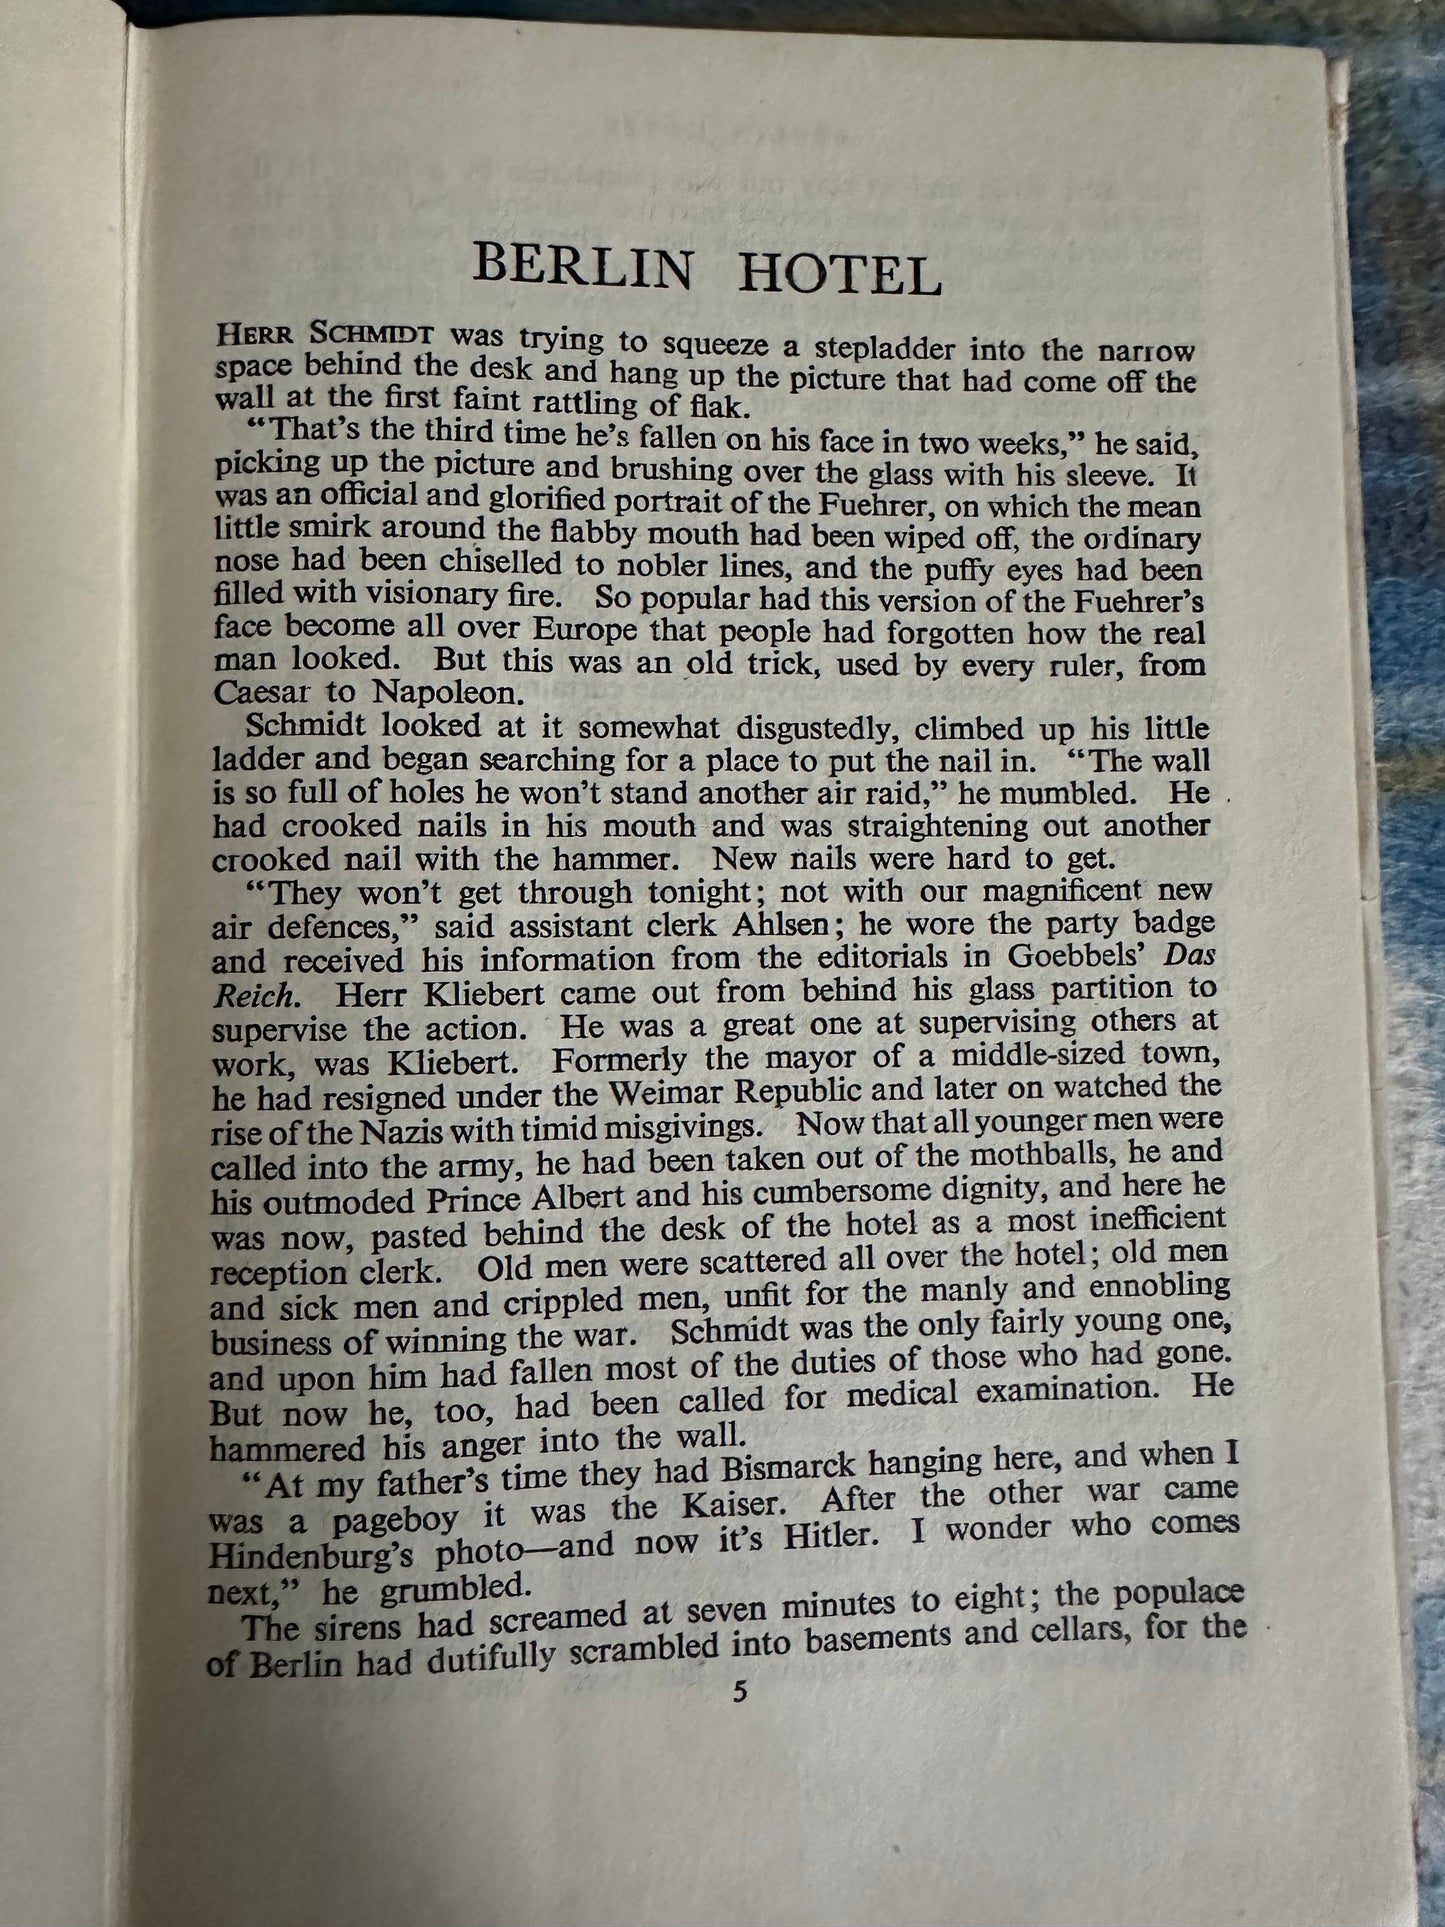 1946*1st* Berlin Hotel - Vicki Baum (Book Club)